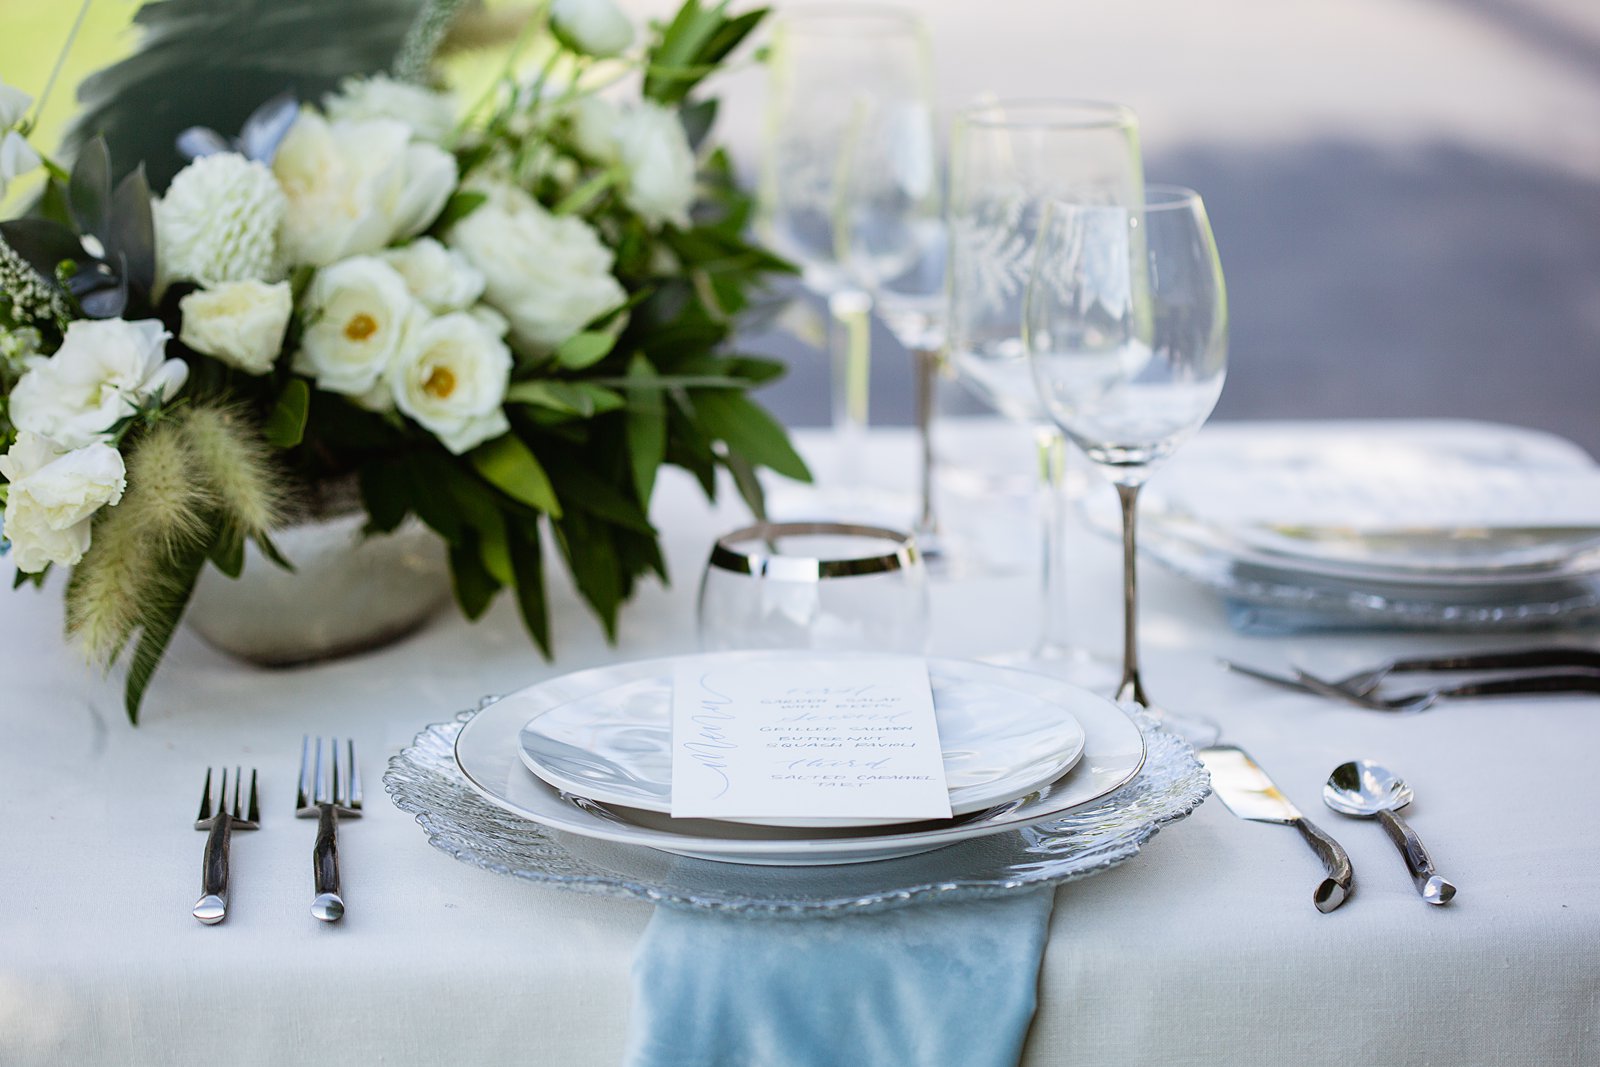 Wedding reception table place setting at Gather Estate by Arizona wedding photographer PMA Photography.